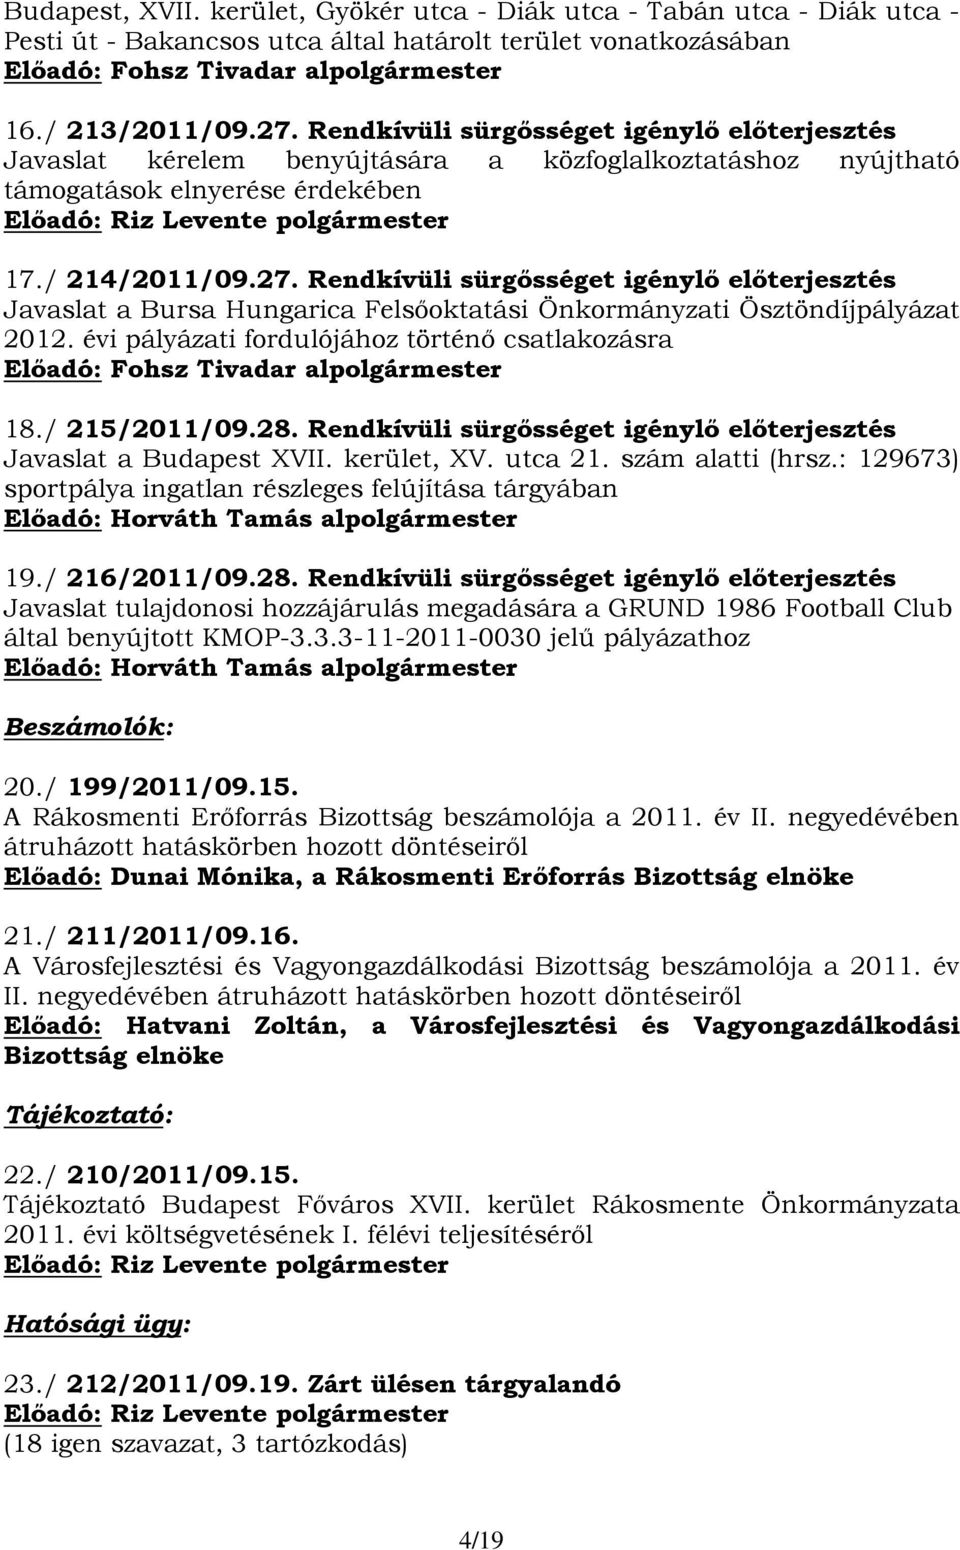 Rendkívüli sürgősséget igénylő előterjesztés Javaslat a Bursa Hungarica Felsőoktatási Önkormányzati Ösztöndíjpályázat 2012. évi pályázati fordulójához történő csatlakozásra 18./ 215/2011/09.28.